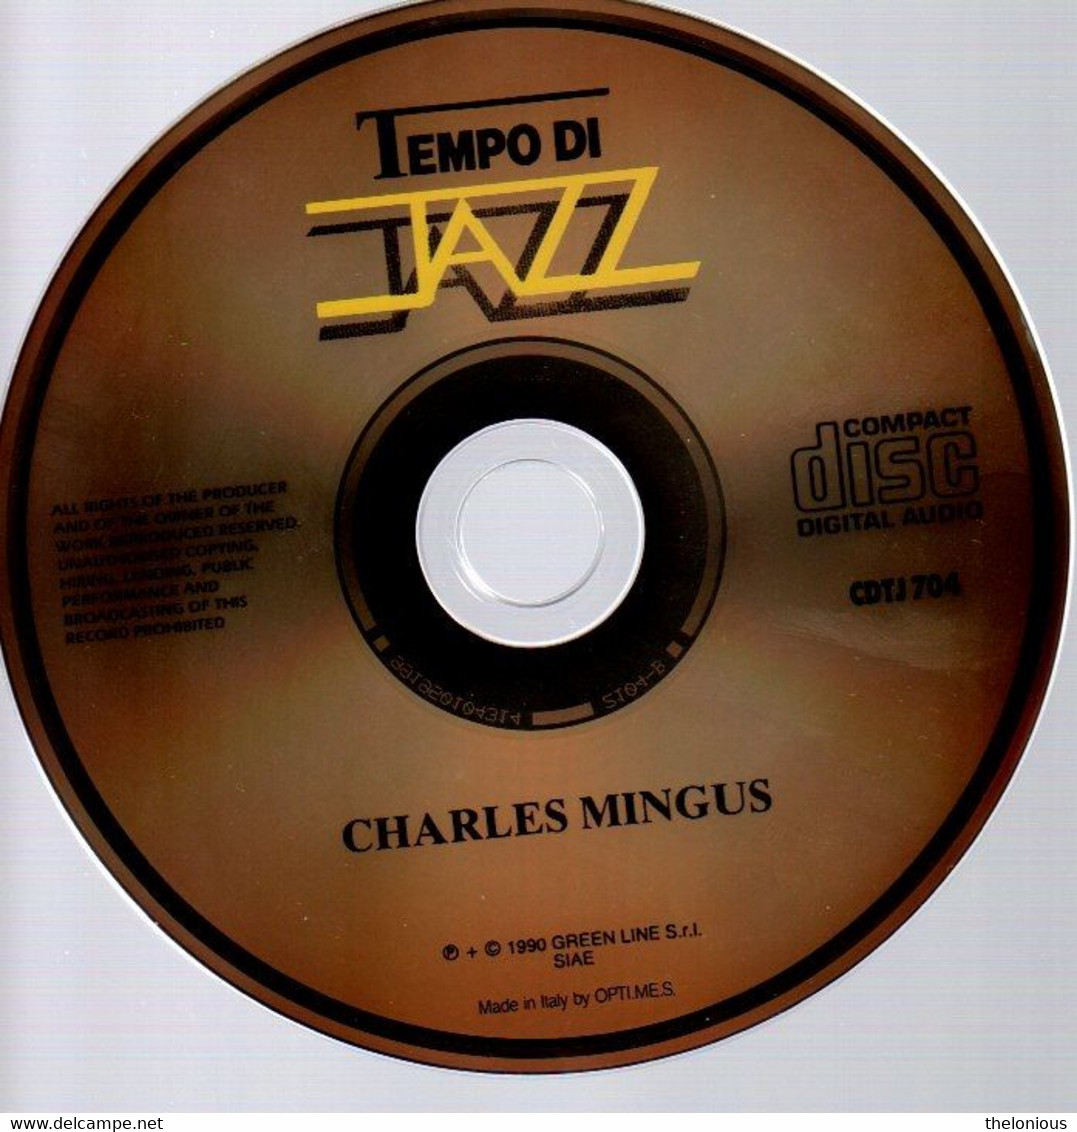 # CD: Charles Mingus – Charles Mingus - Tempo Di Jazz CDTJ 704 - Jazz